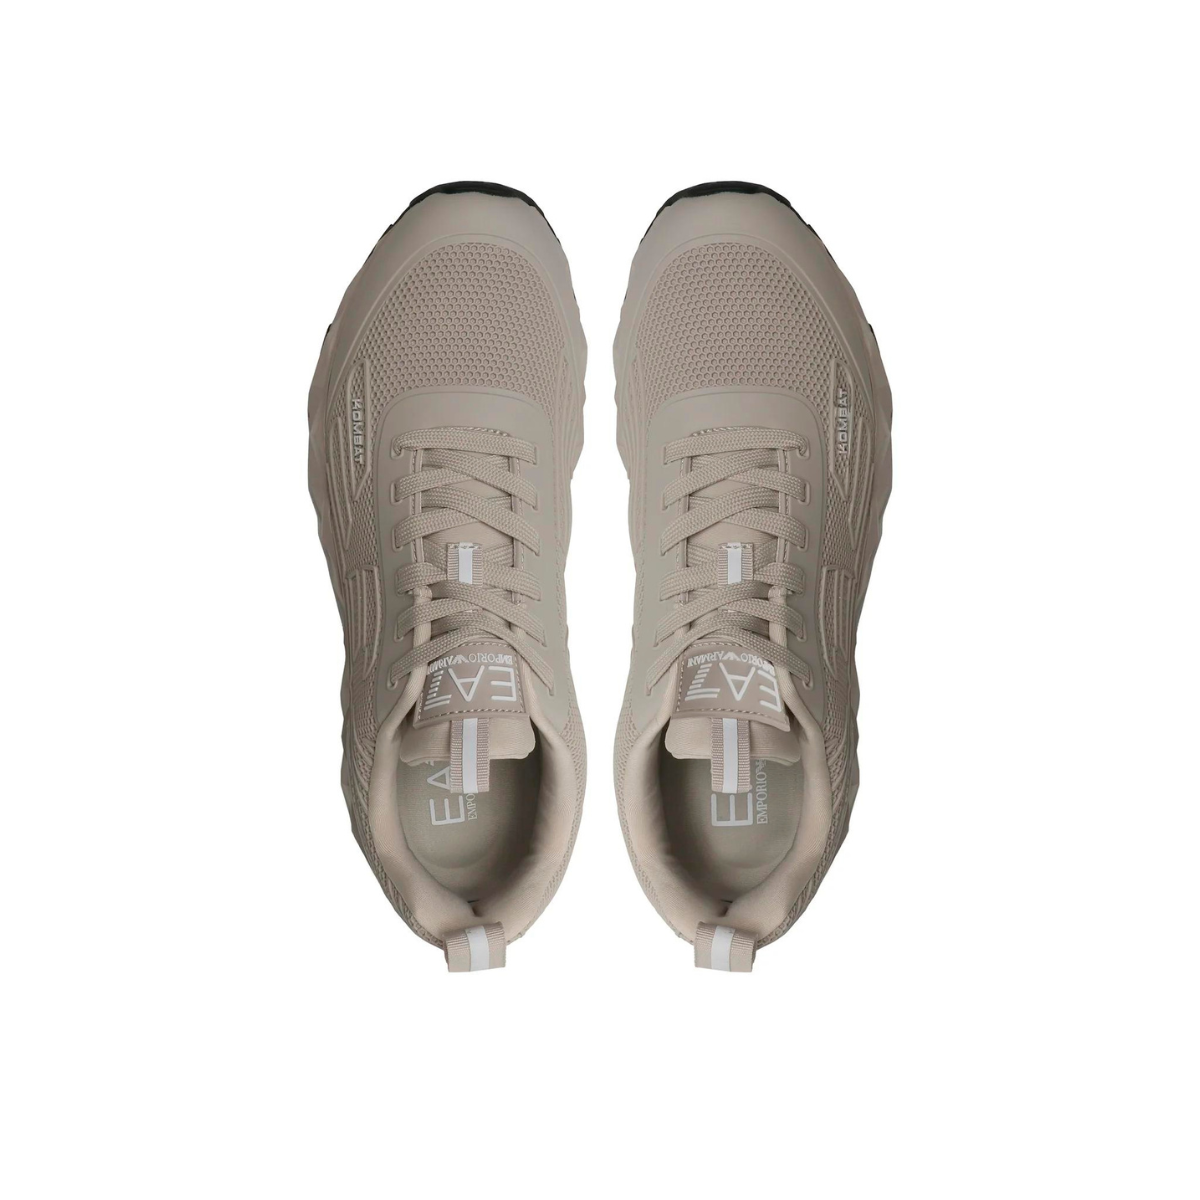 EA7 Giorgio Armani - Unisex Woven Sneaker - Silver Cloud+White